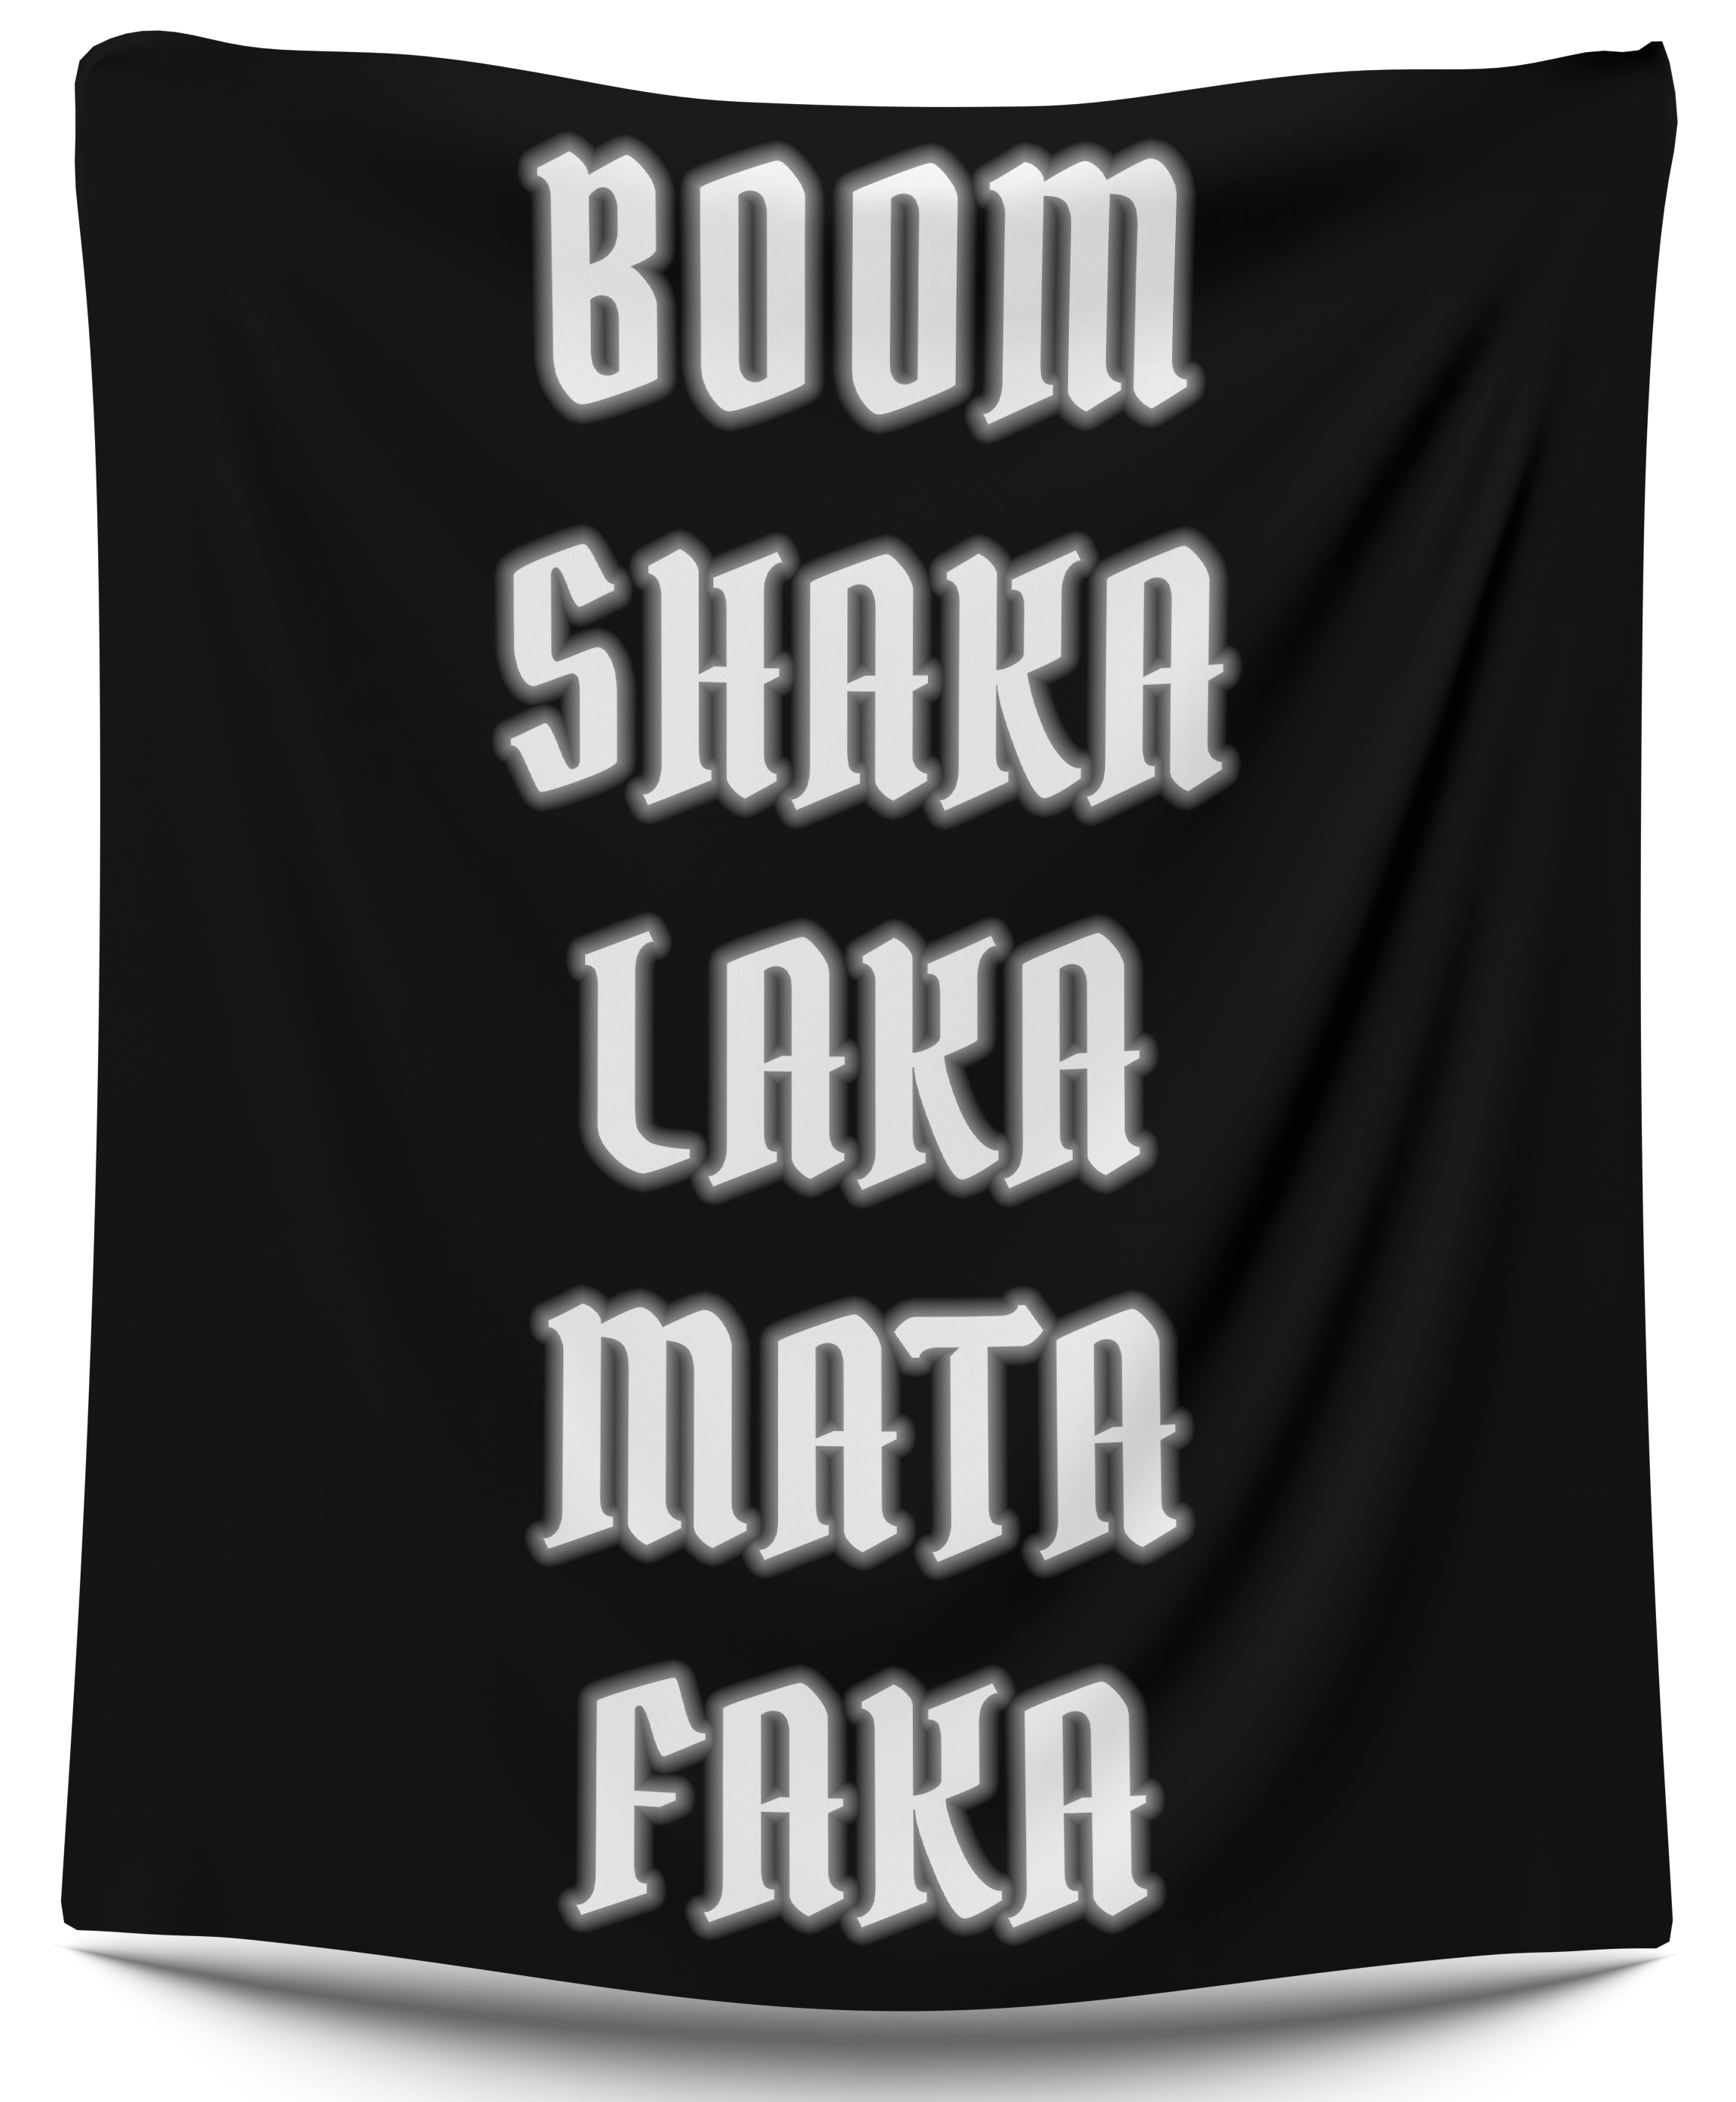 Boom Shaka Laka Mata Faka Tapestry - CollegeWares